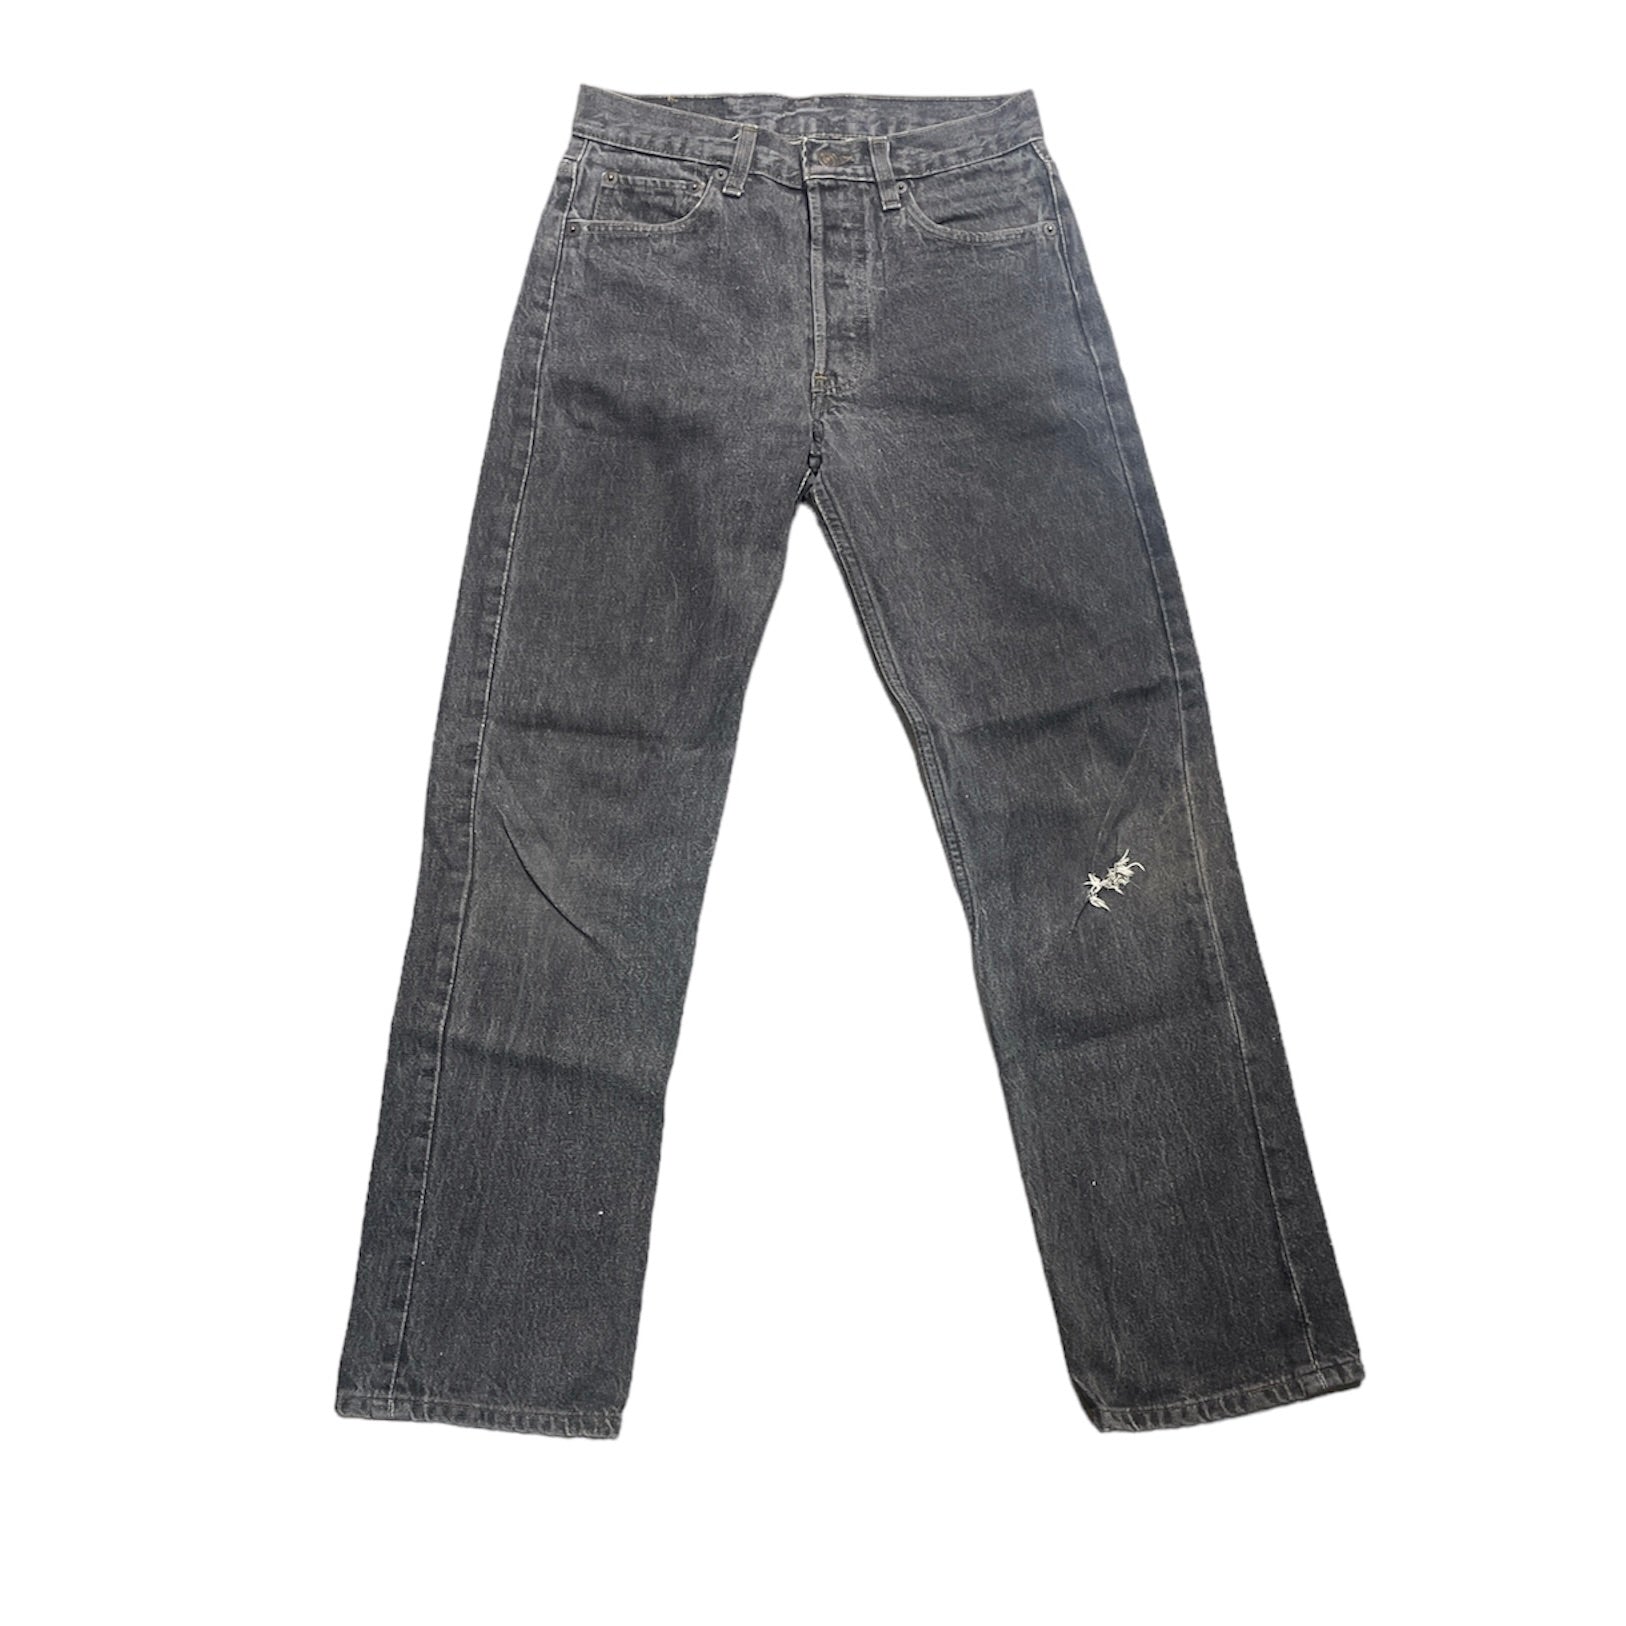 Vintage Levis 501 Gray Jeans (W28/L30)